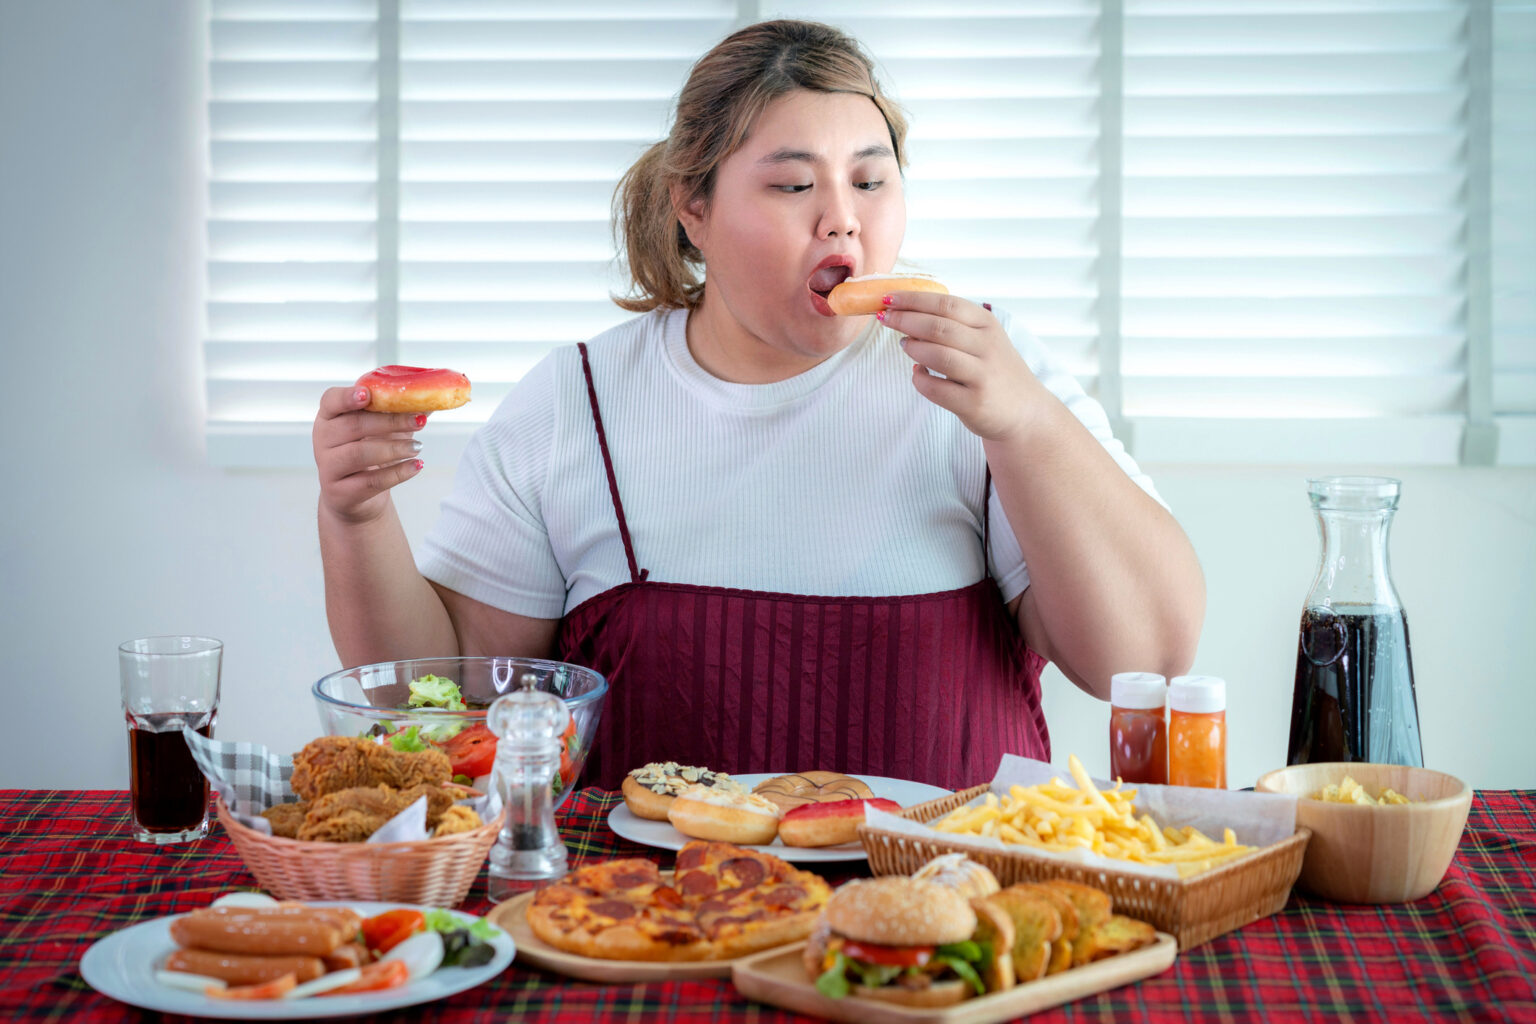 Kompulsywne Objadanie Się I Cheat Meal A Insulinooporność I Cukrzyca Typu 2 Analityka